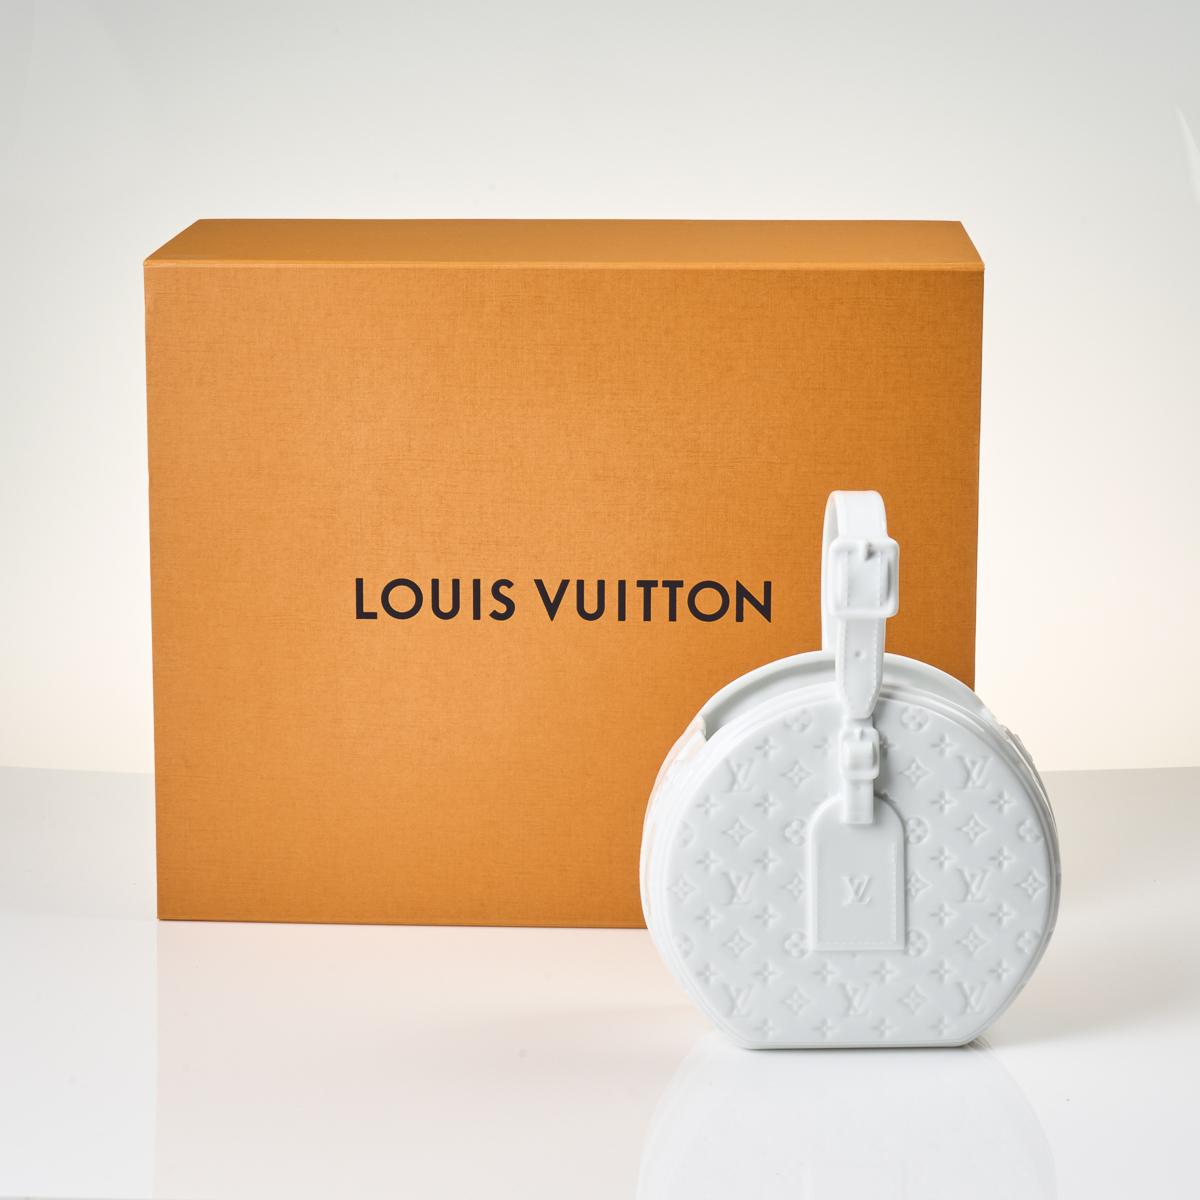 The best dupe for the Louis Vuitton porcelain vase petite boite